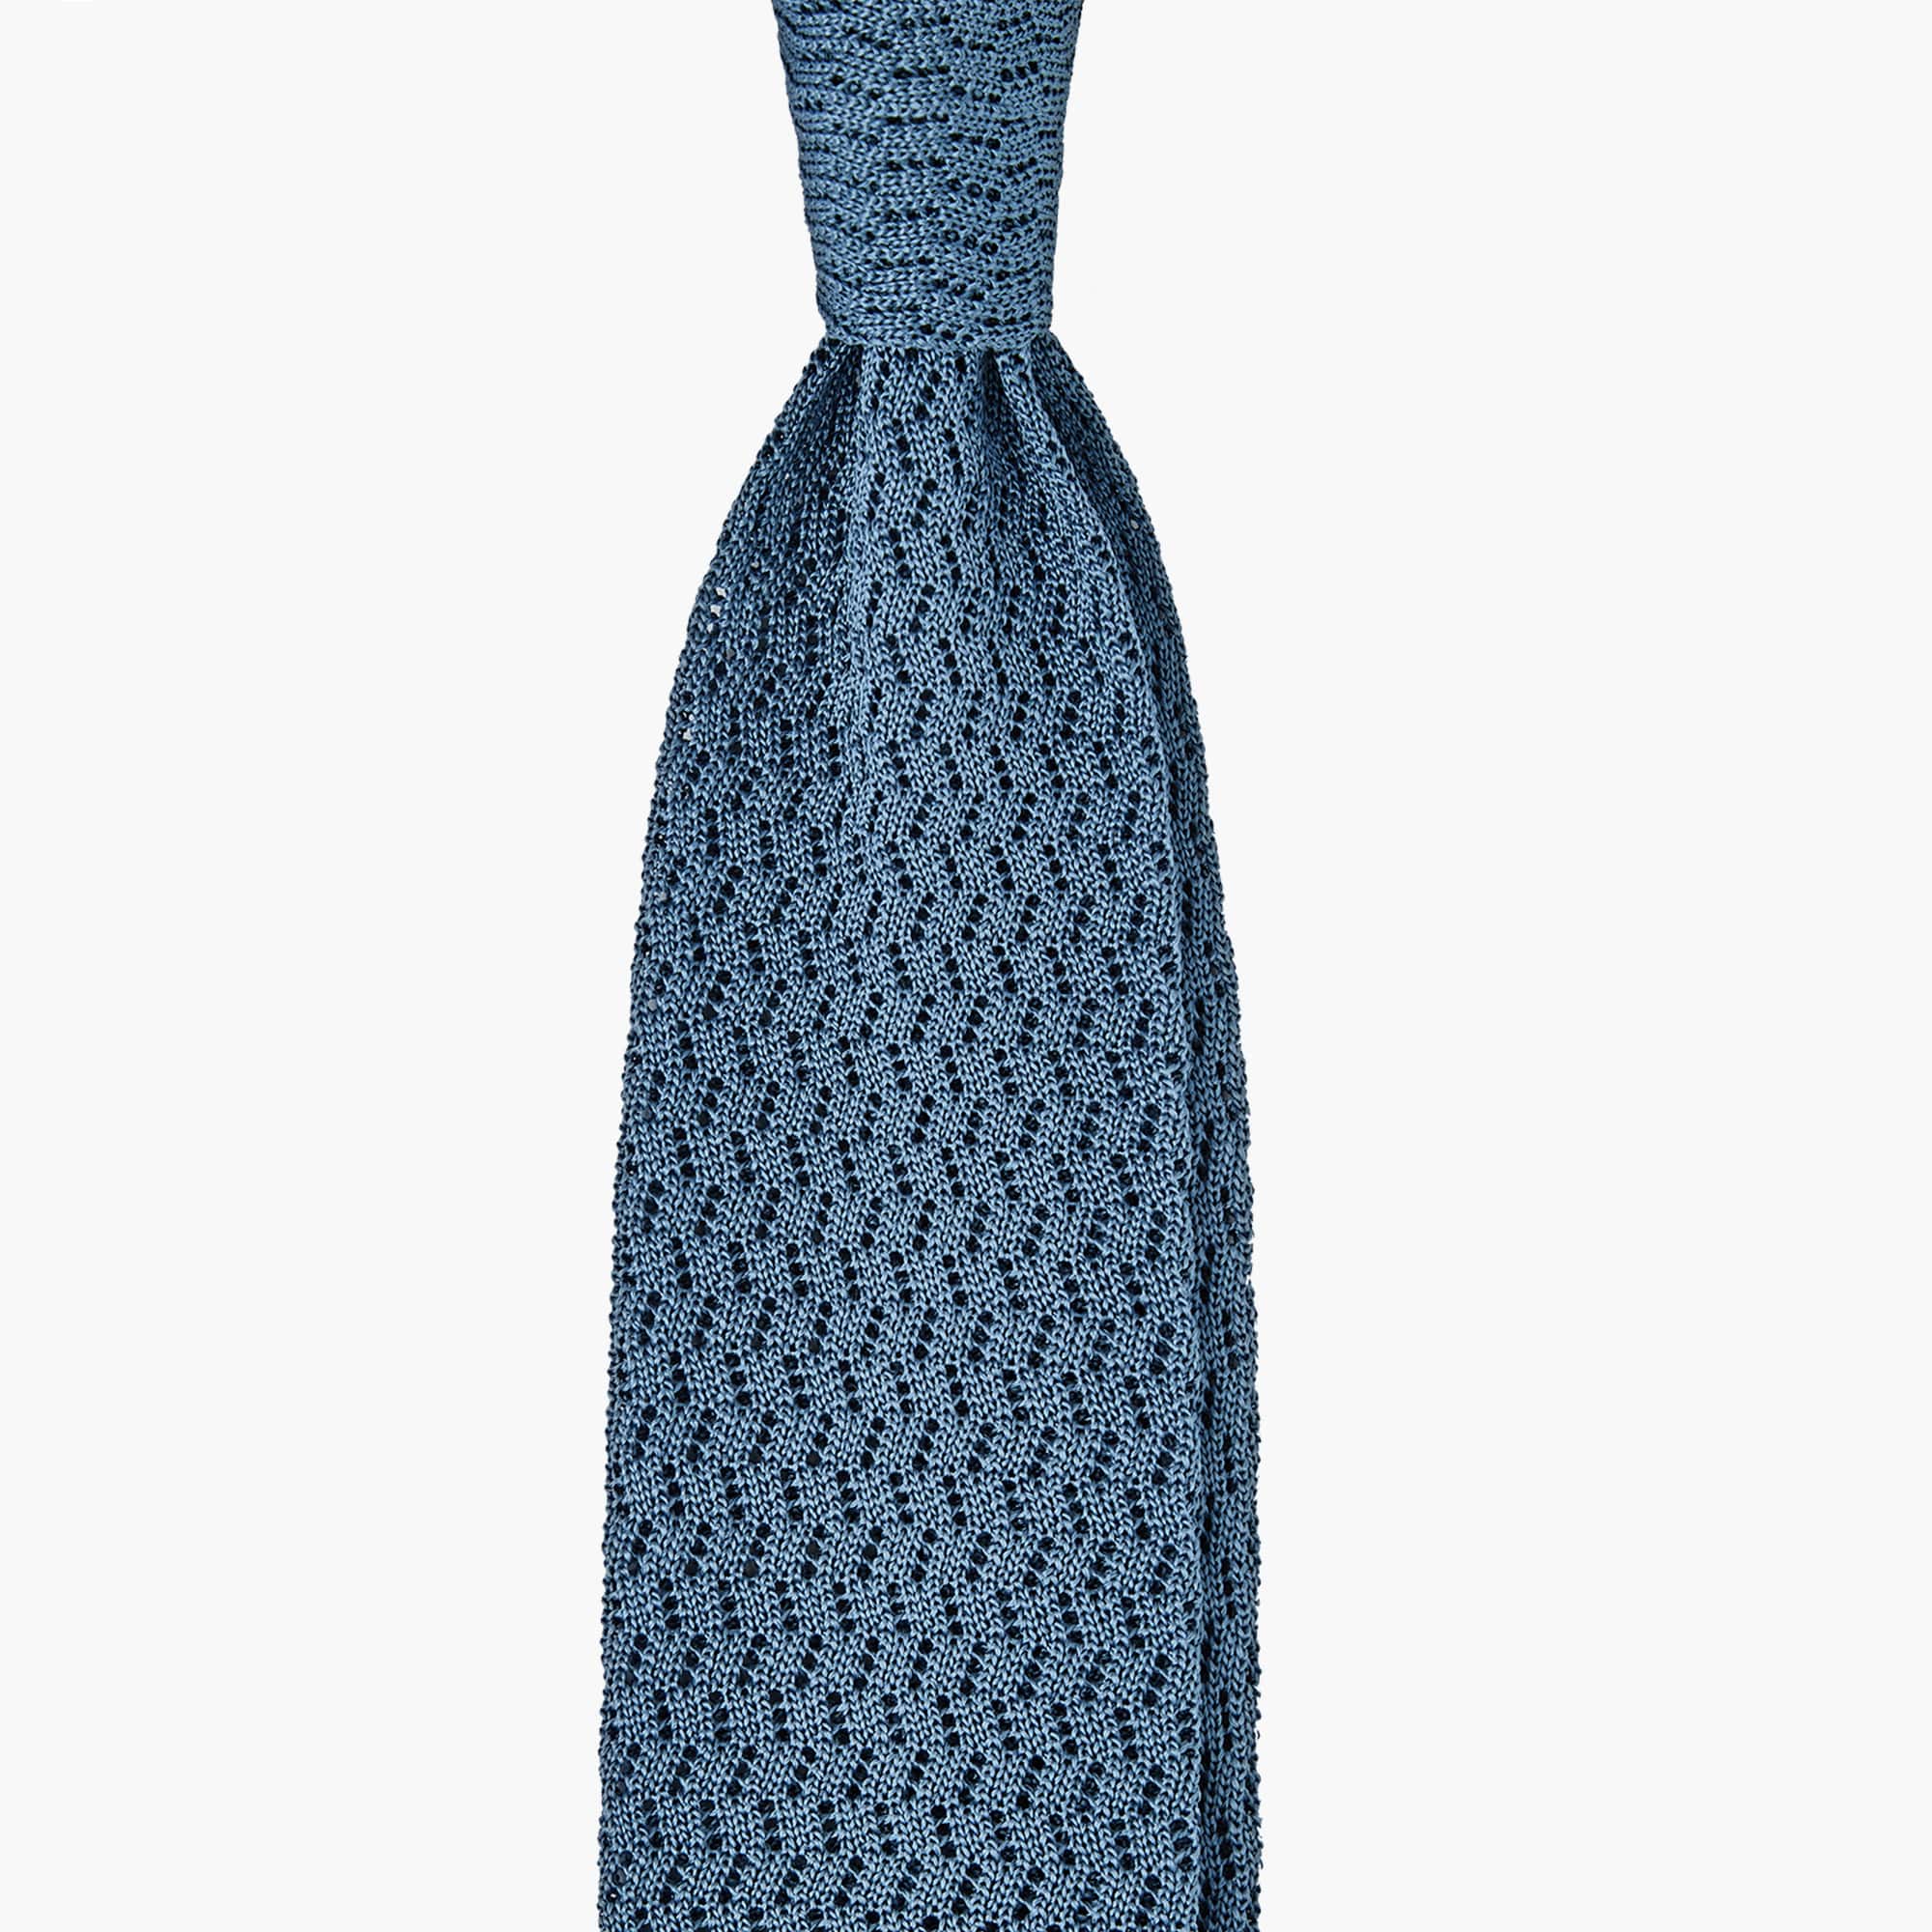 Cravatta Tricot in Maglia ZigZag - Blu Mare